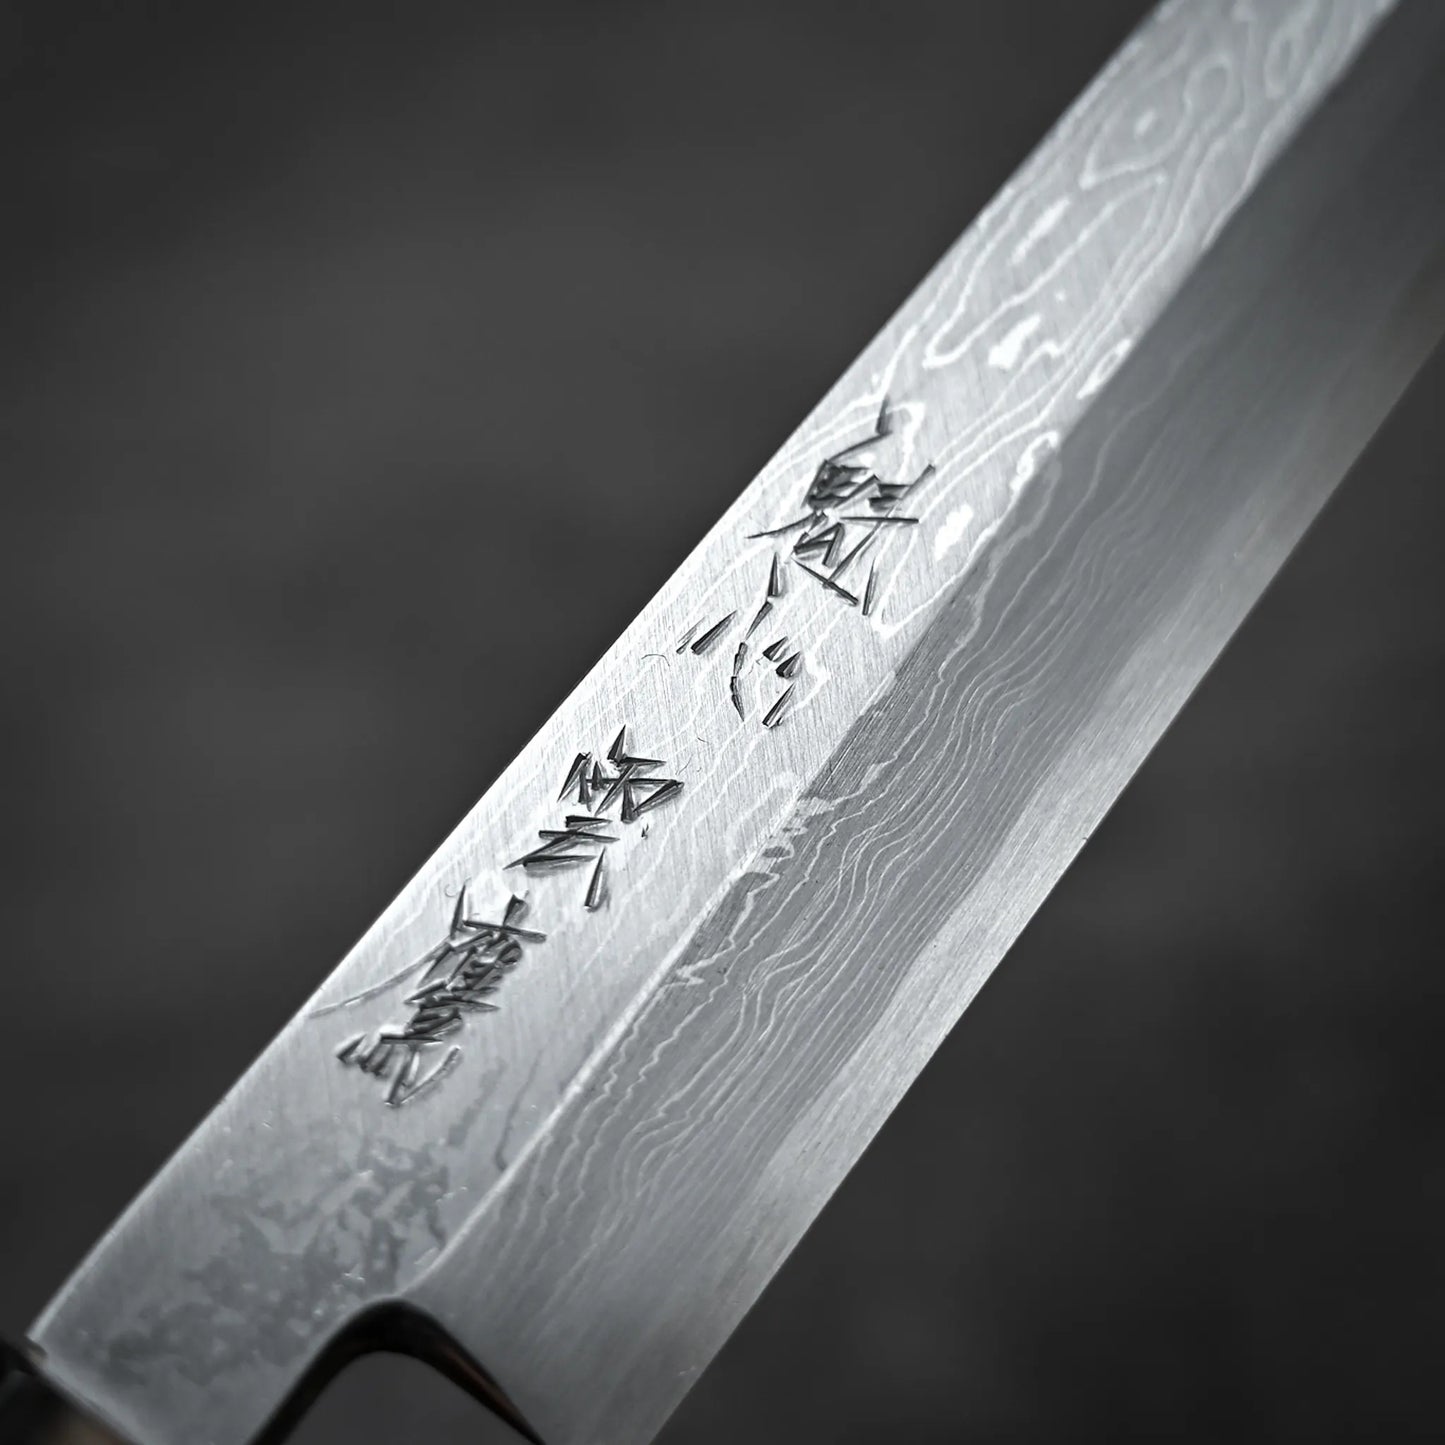 Nakagawa shirogami#1 damascus yanagiba 300mm